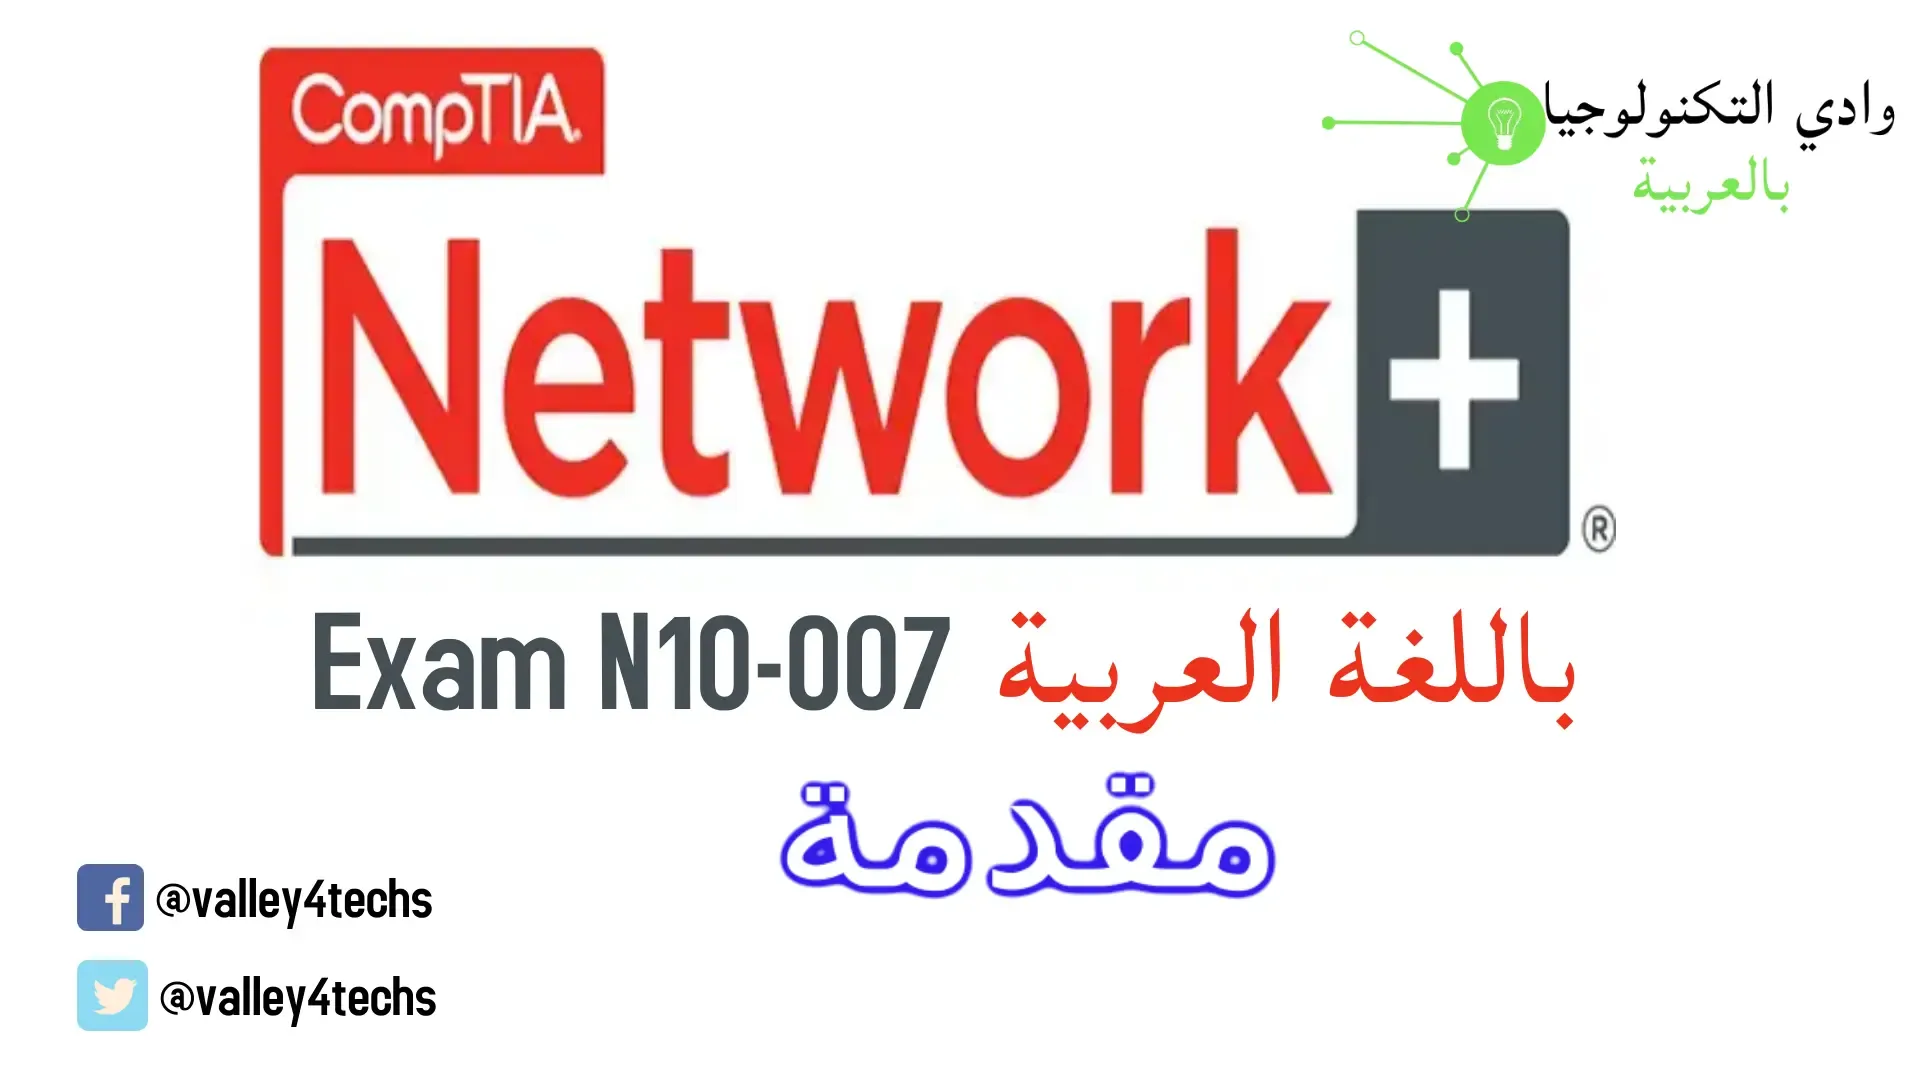 وادي التكنولوجيا | بالعربية: شرح +CompTIA Network بالعربي | مقدمة